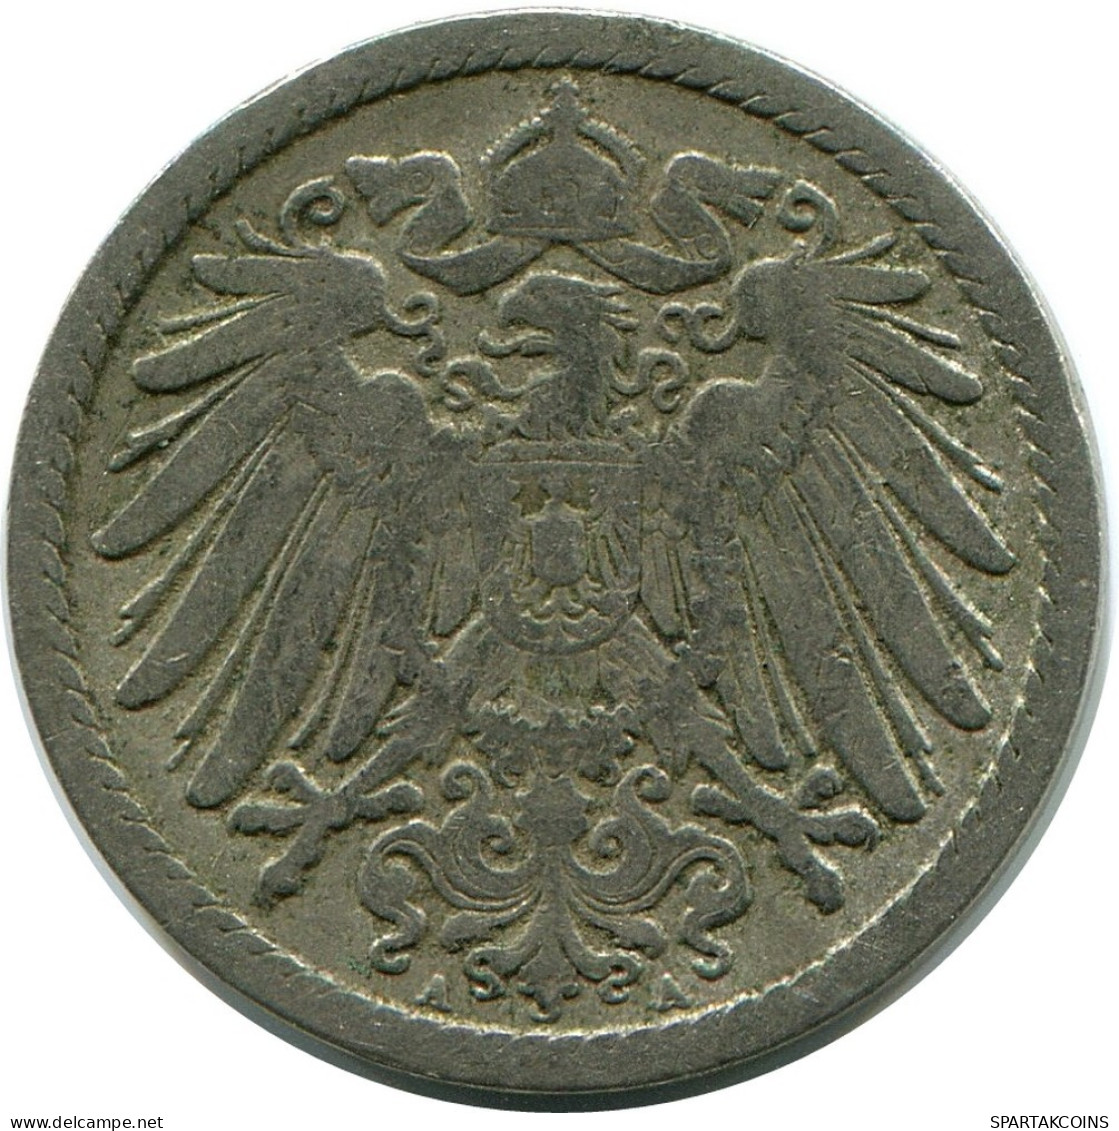 5 PFENNIG 1893 A GERMANY Coin #DB207.U.A - 5 Pfennig